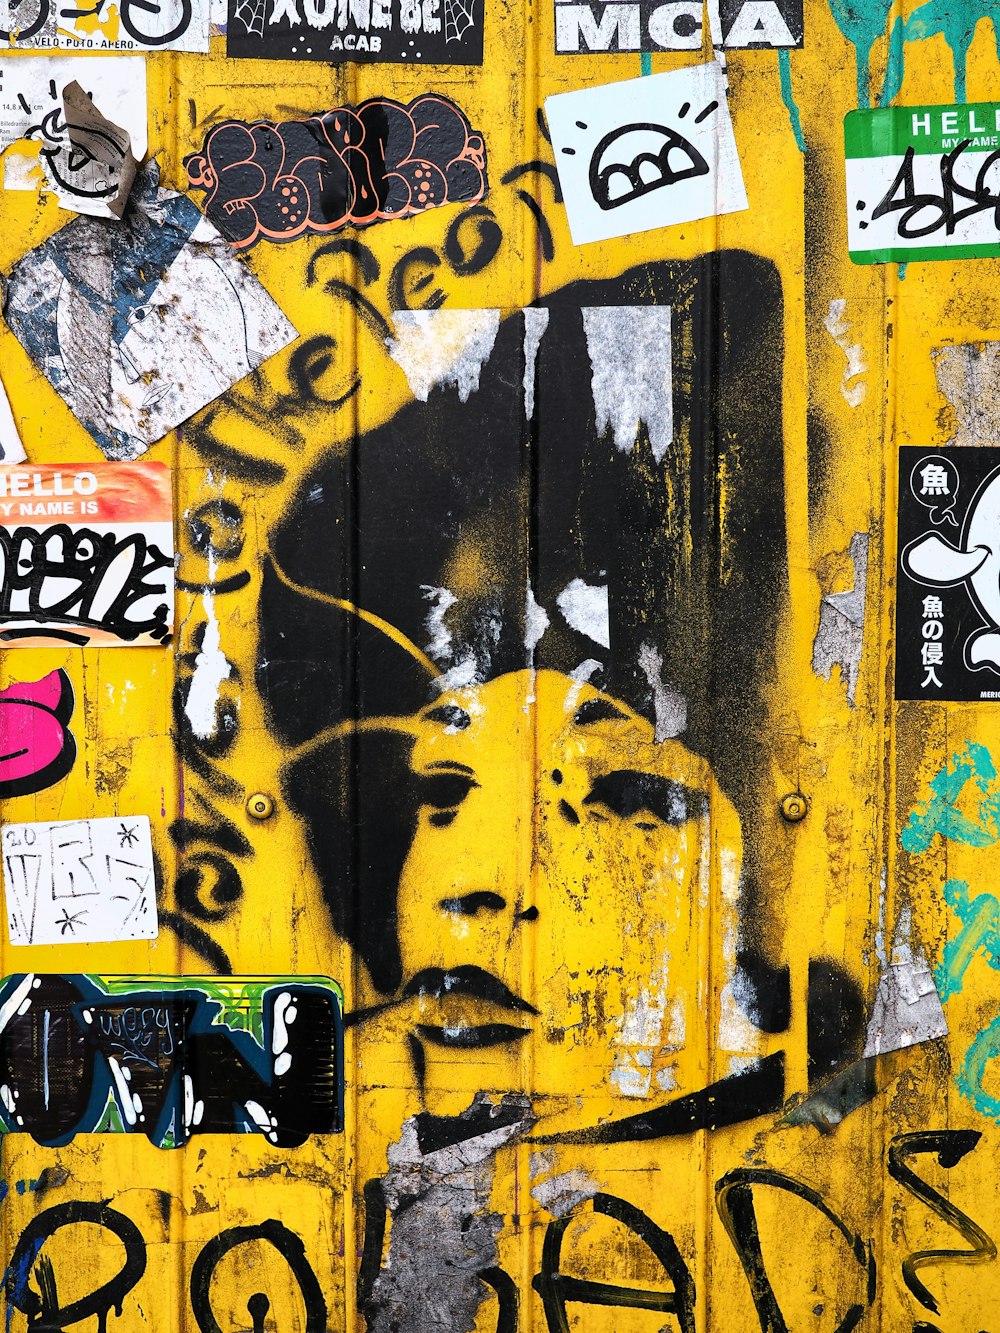 yellow and black graffiti art photo – Free Toulouse Image on Unsplash